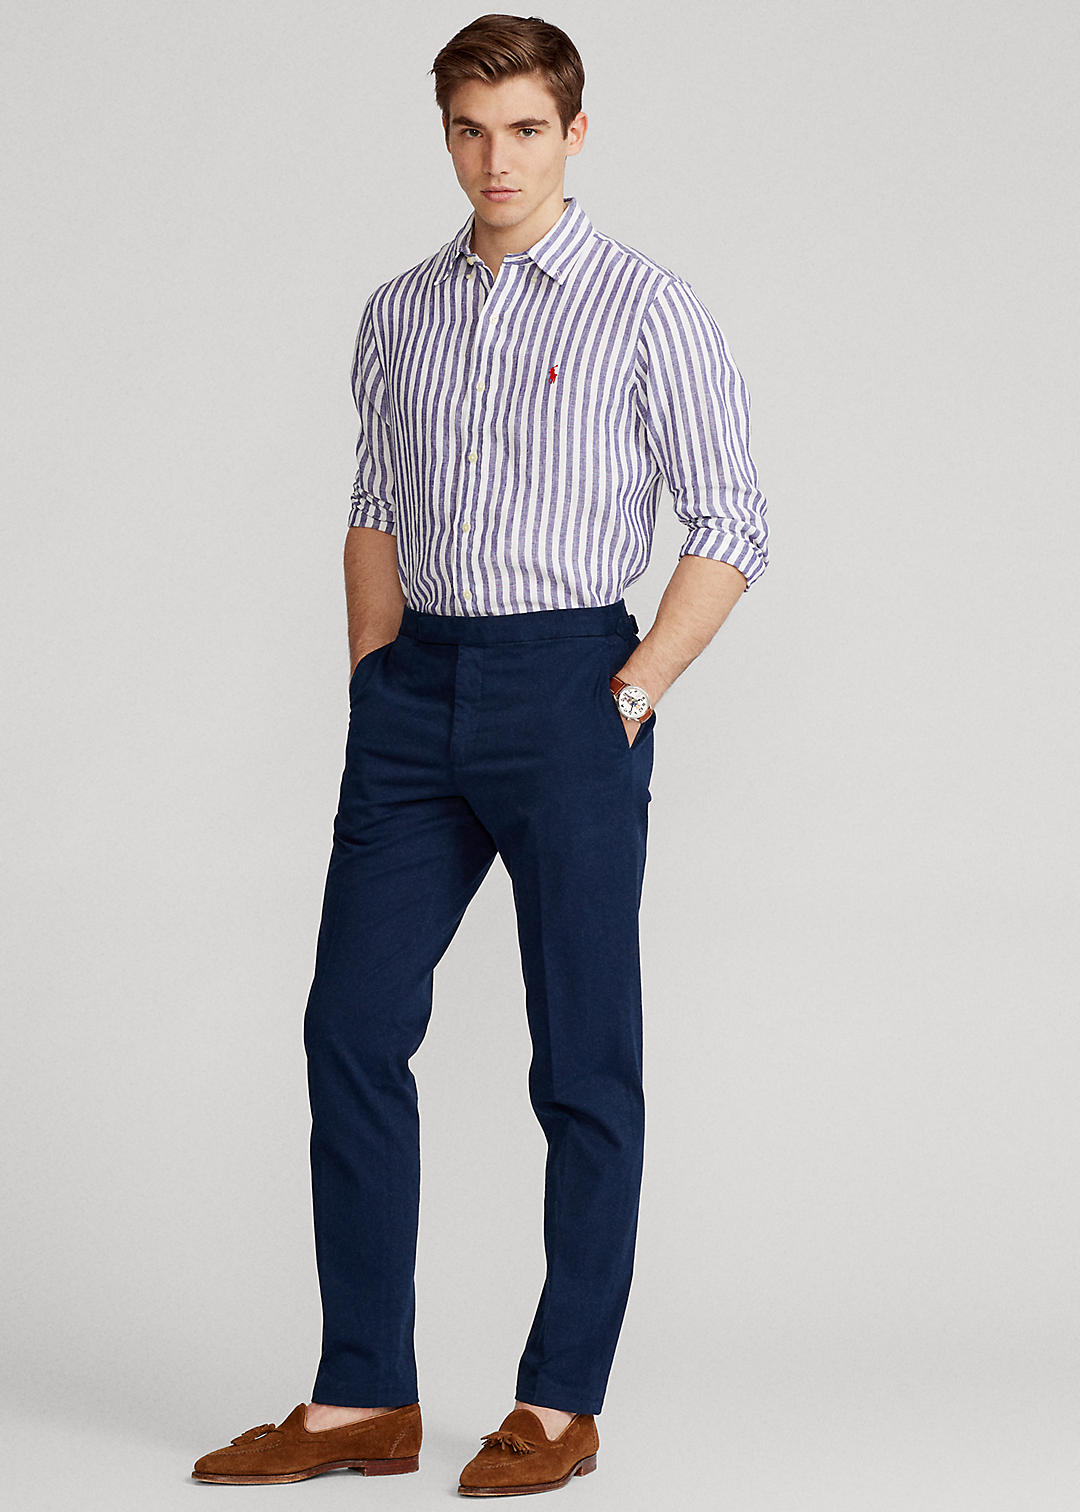 Polo Ralph Lauren Classic Fit Striped Linen Shirt 3